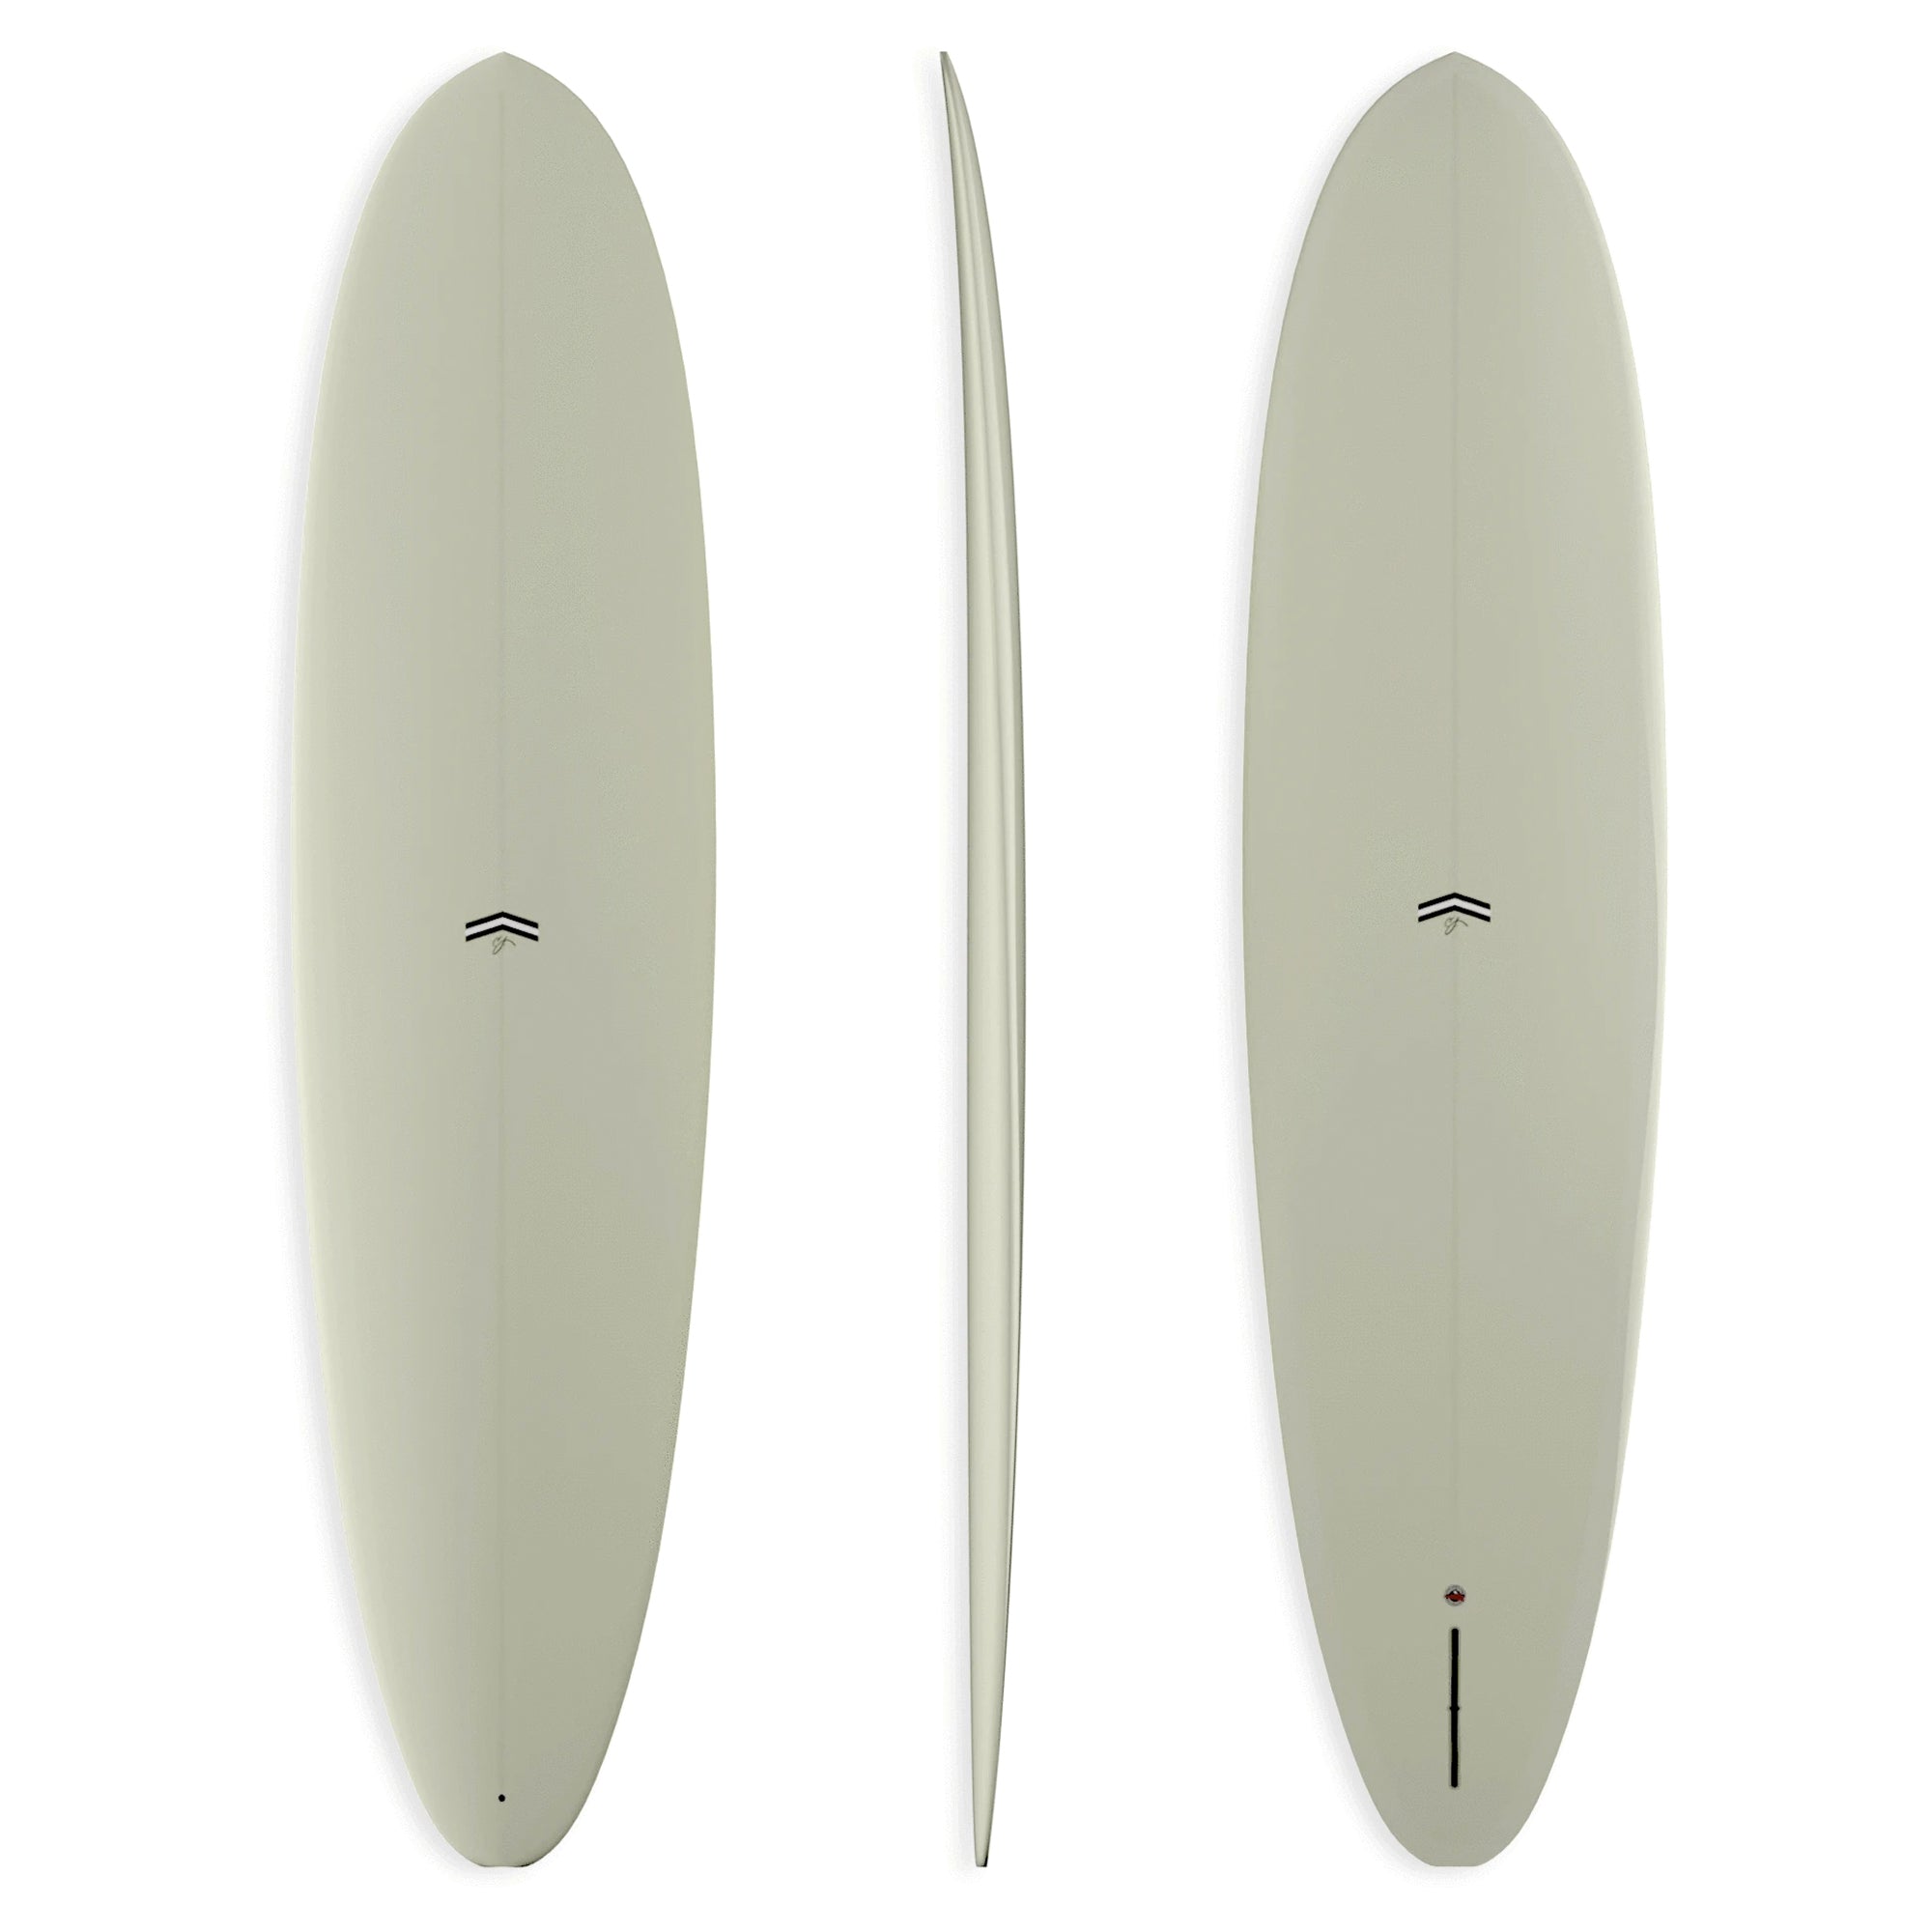 CJ Nelson Outlier Thunderbolt Surfboard